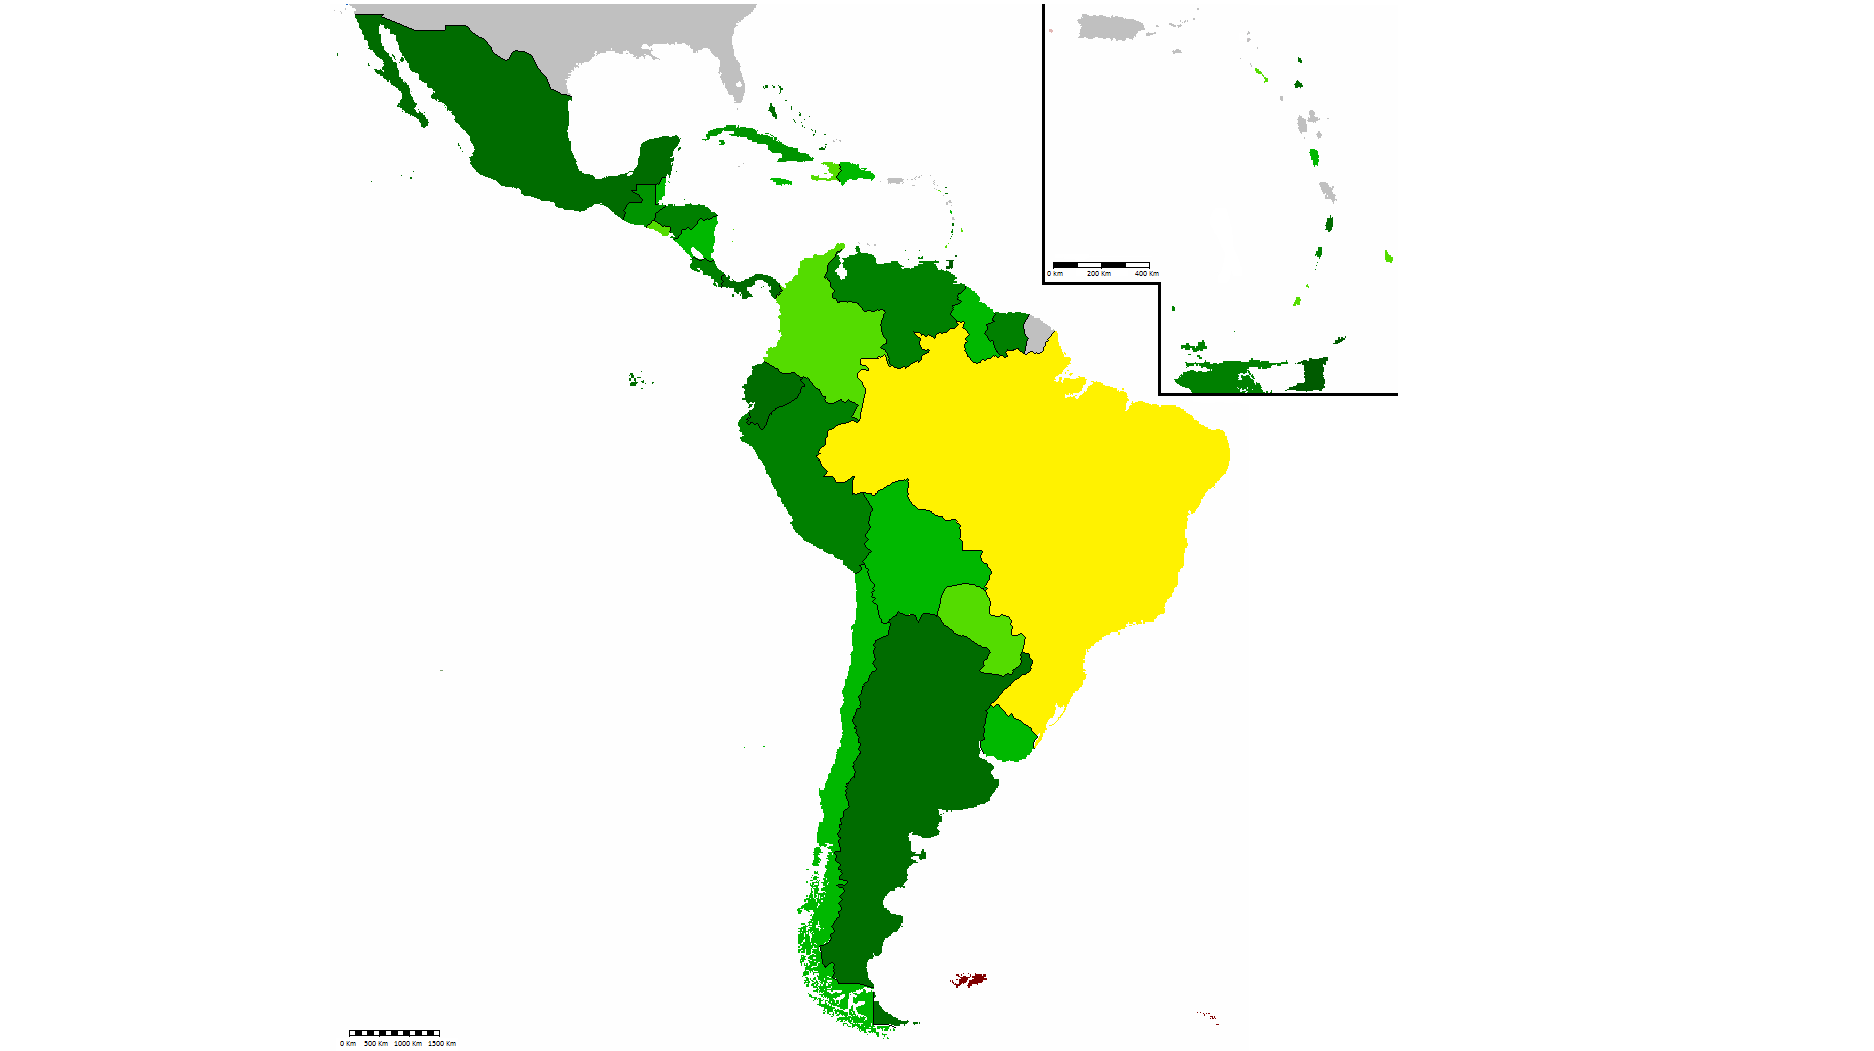 СЕЛАК-государства Сообщества стран Латинской Америки и Карибского бассейна